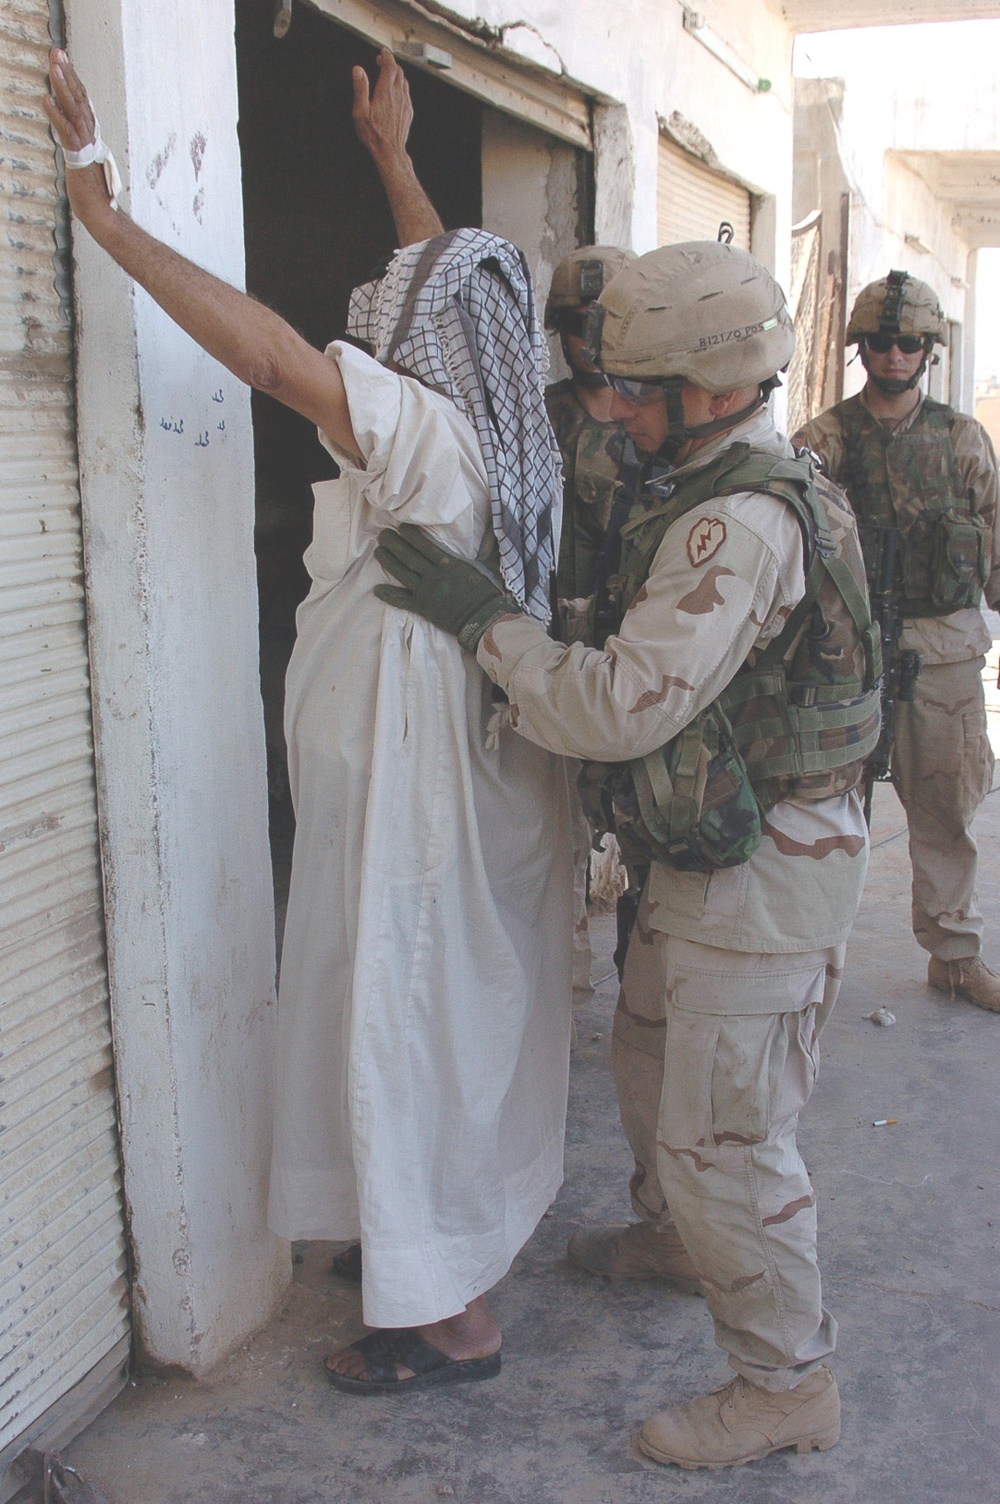 Staff Sgt. Jesse Wyant searches an Iraqi man